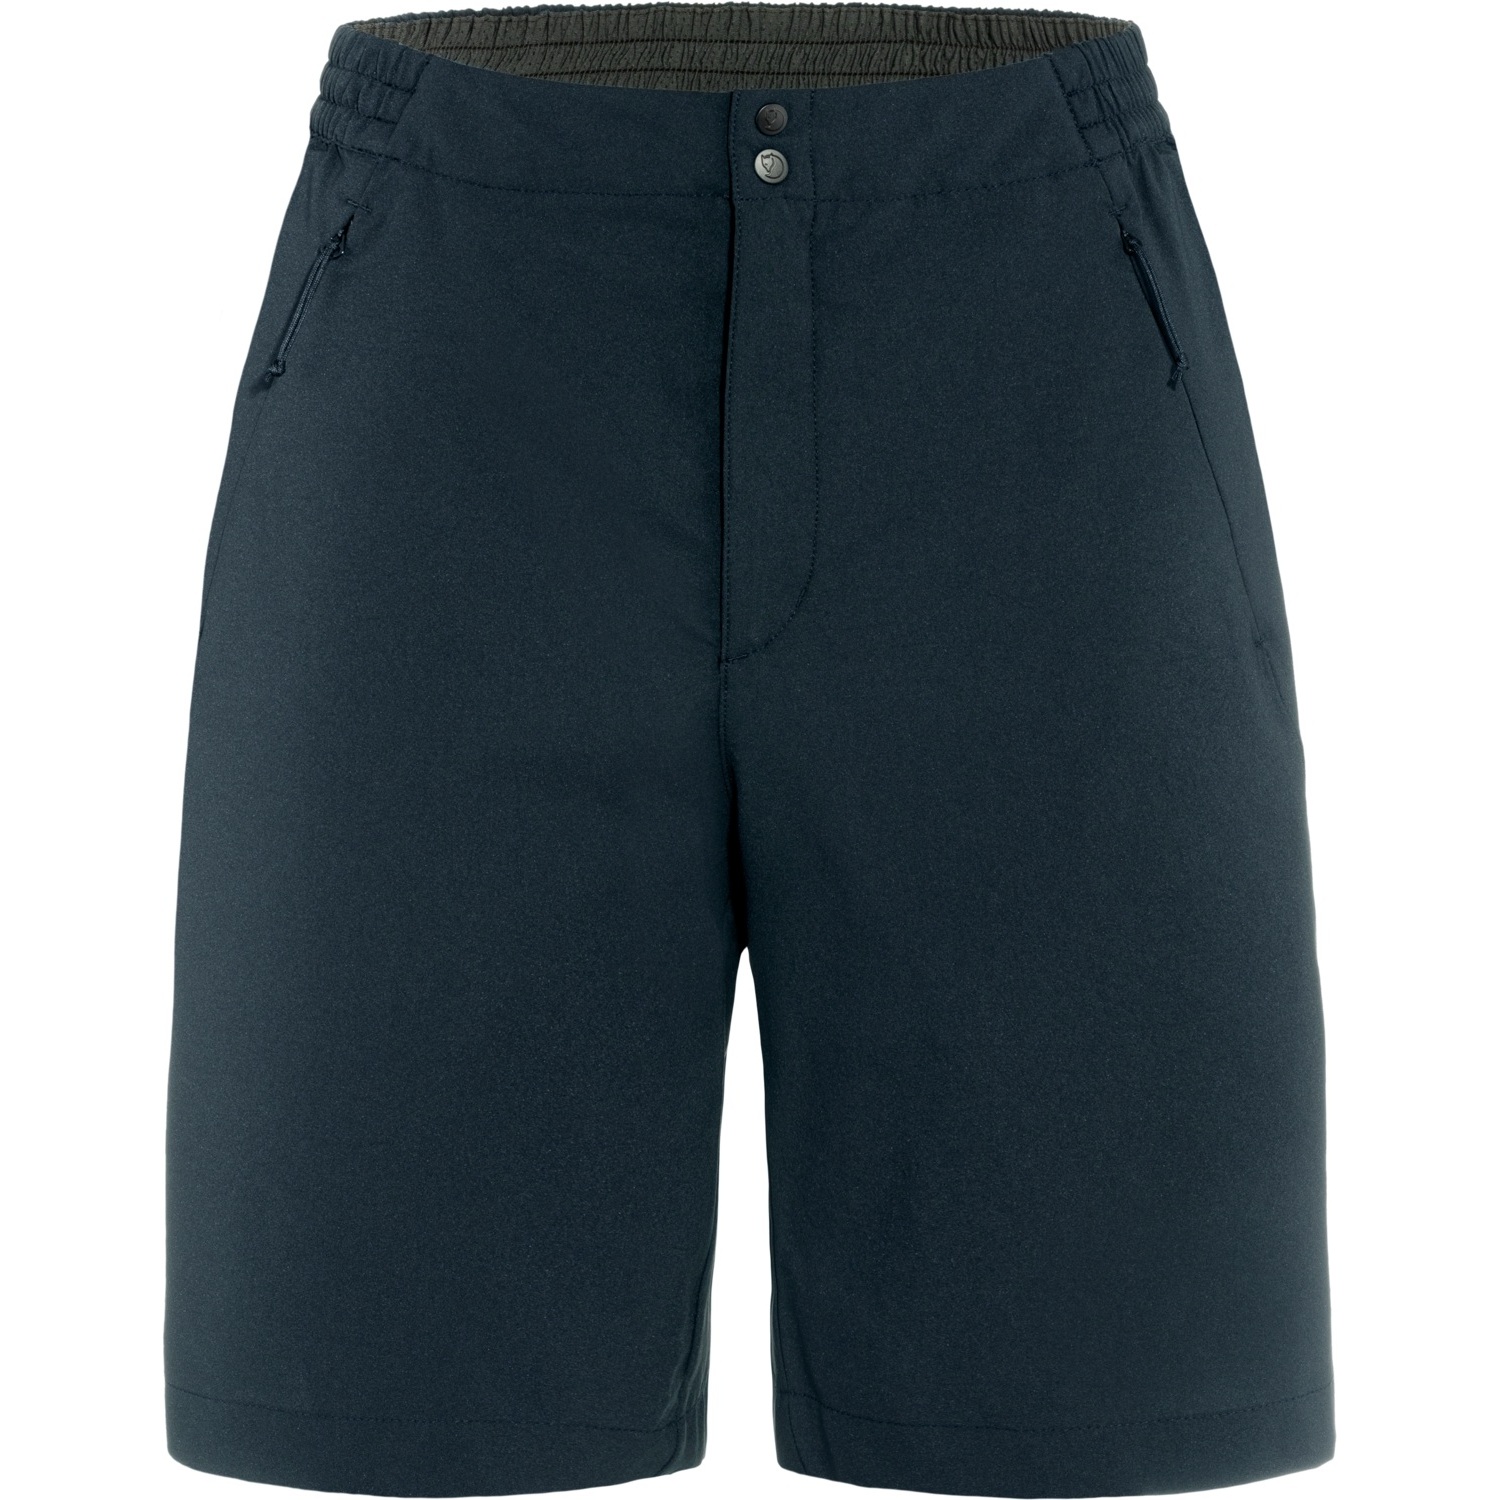 Produktbild von Fjällräven High Coast Shade Shorts Damen - dark navy